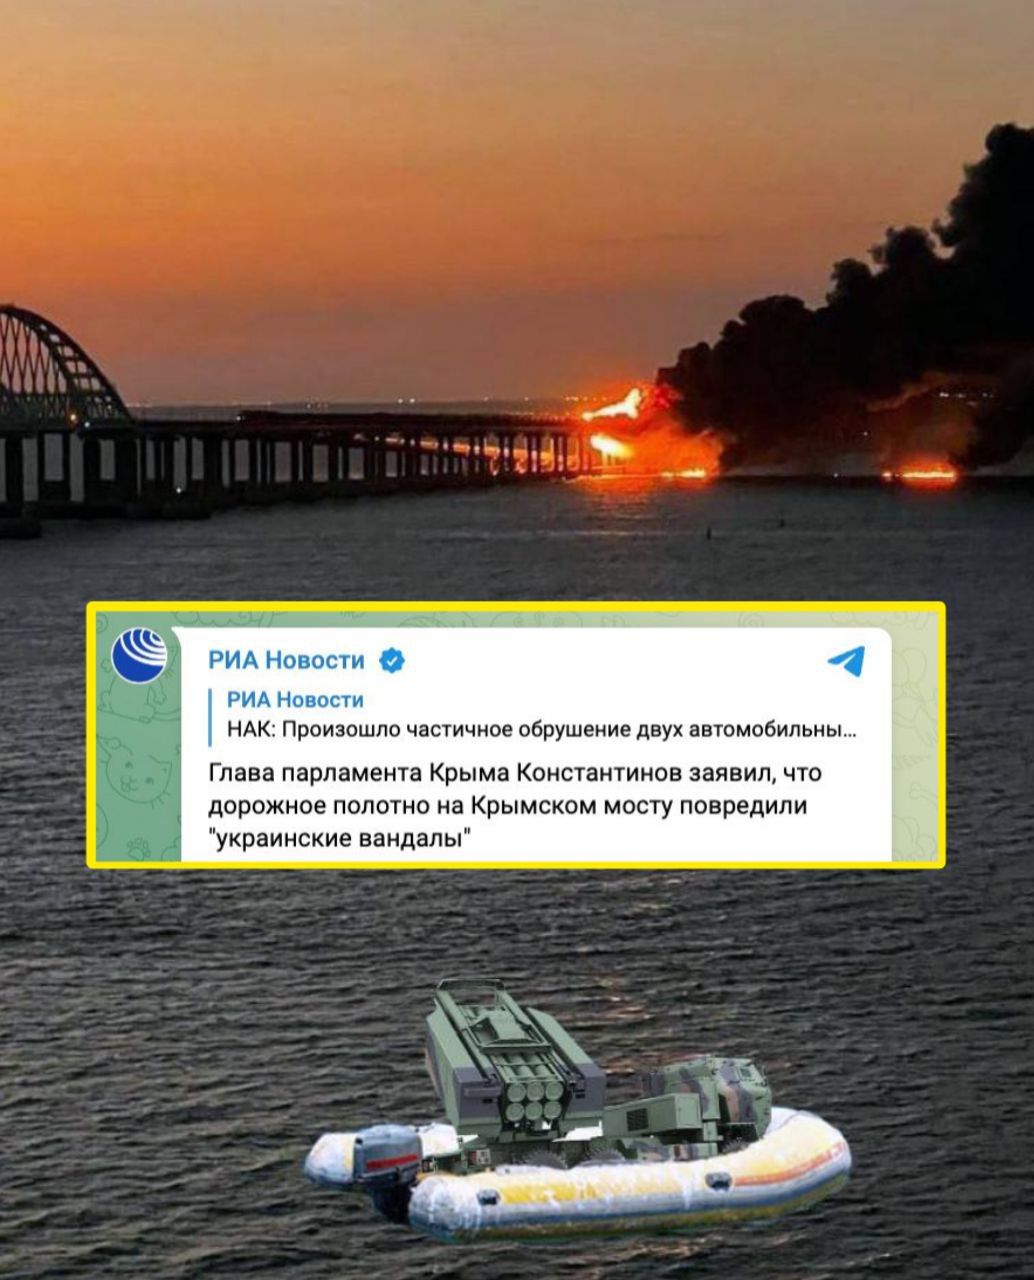 Дорожное полотно на Крымском мосту повредили "украинские вандалы" — глава парламента Крыма Константинов